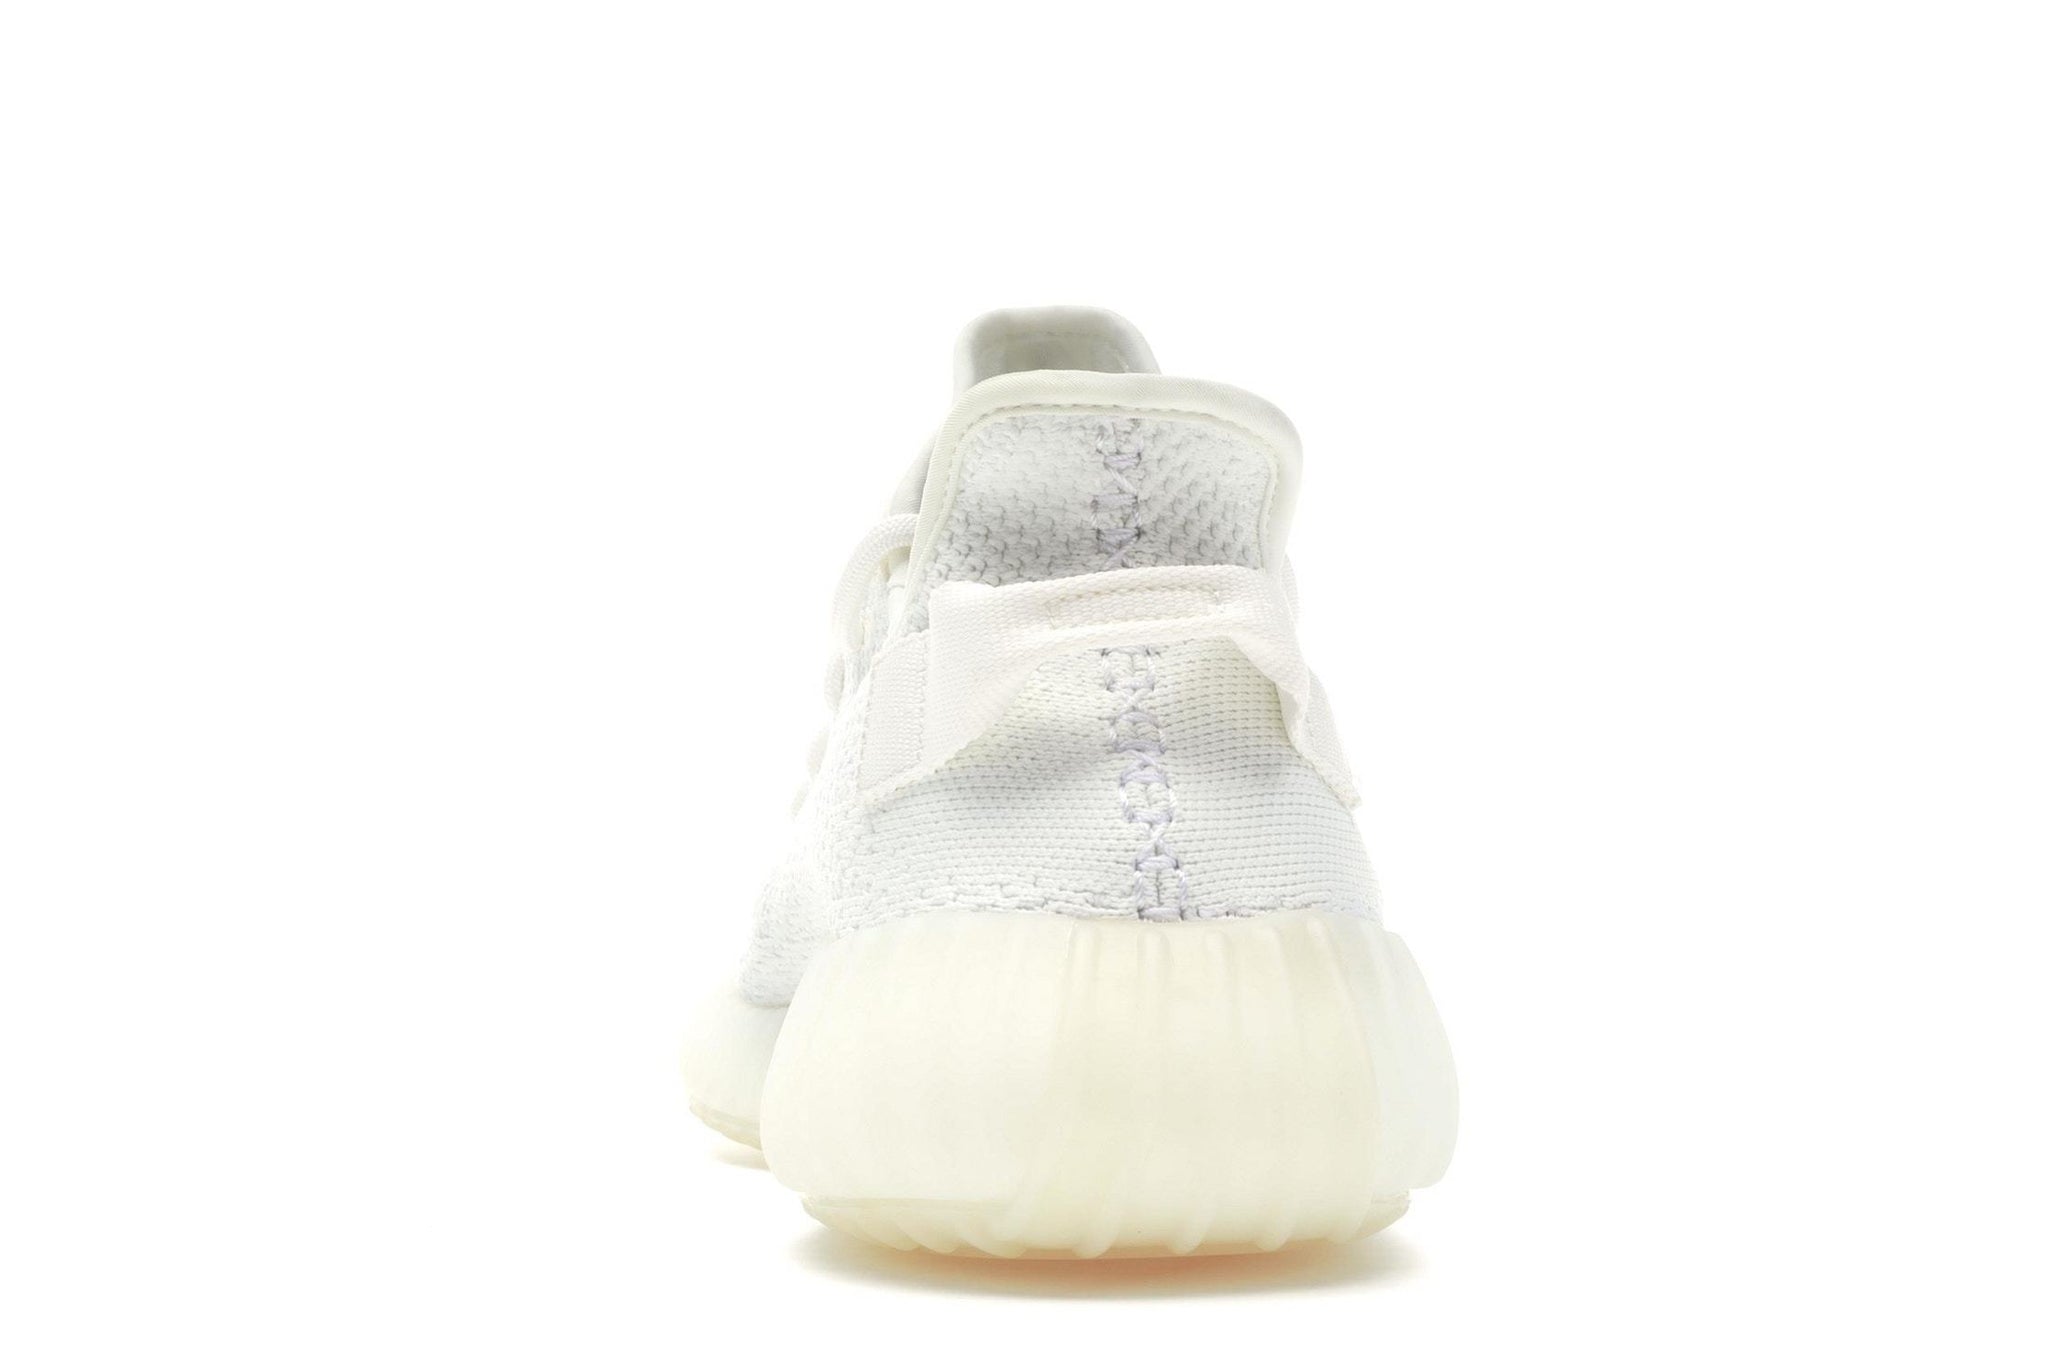 Size 8.5 - adidas Yeezy Boost 350 V2 Cream White/Triple White 2017 Off White